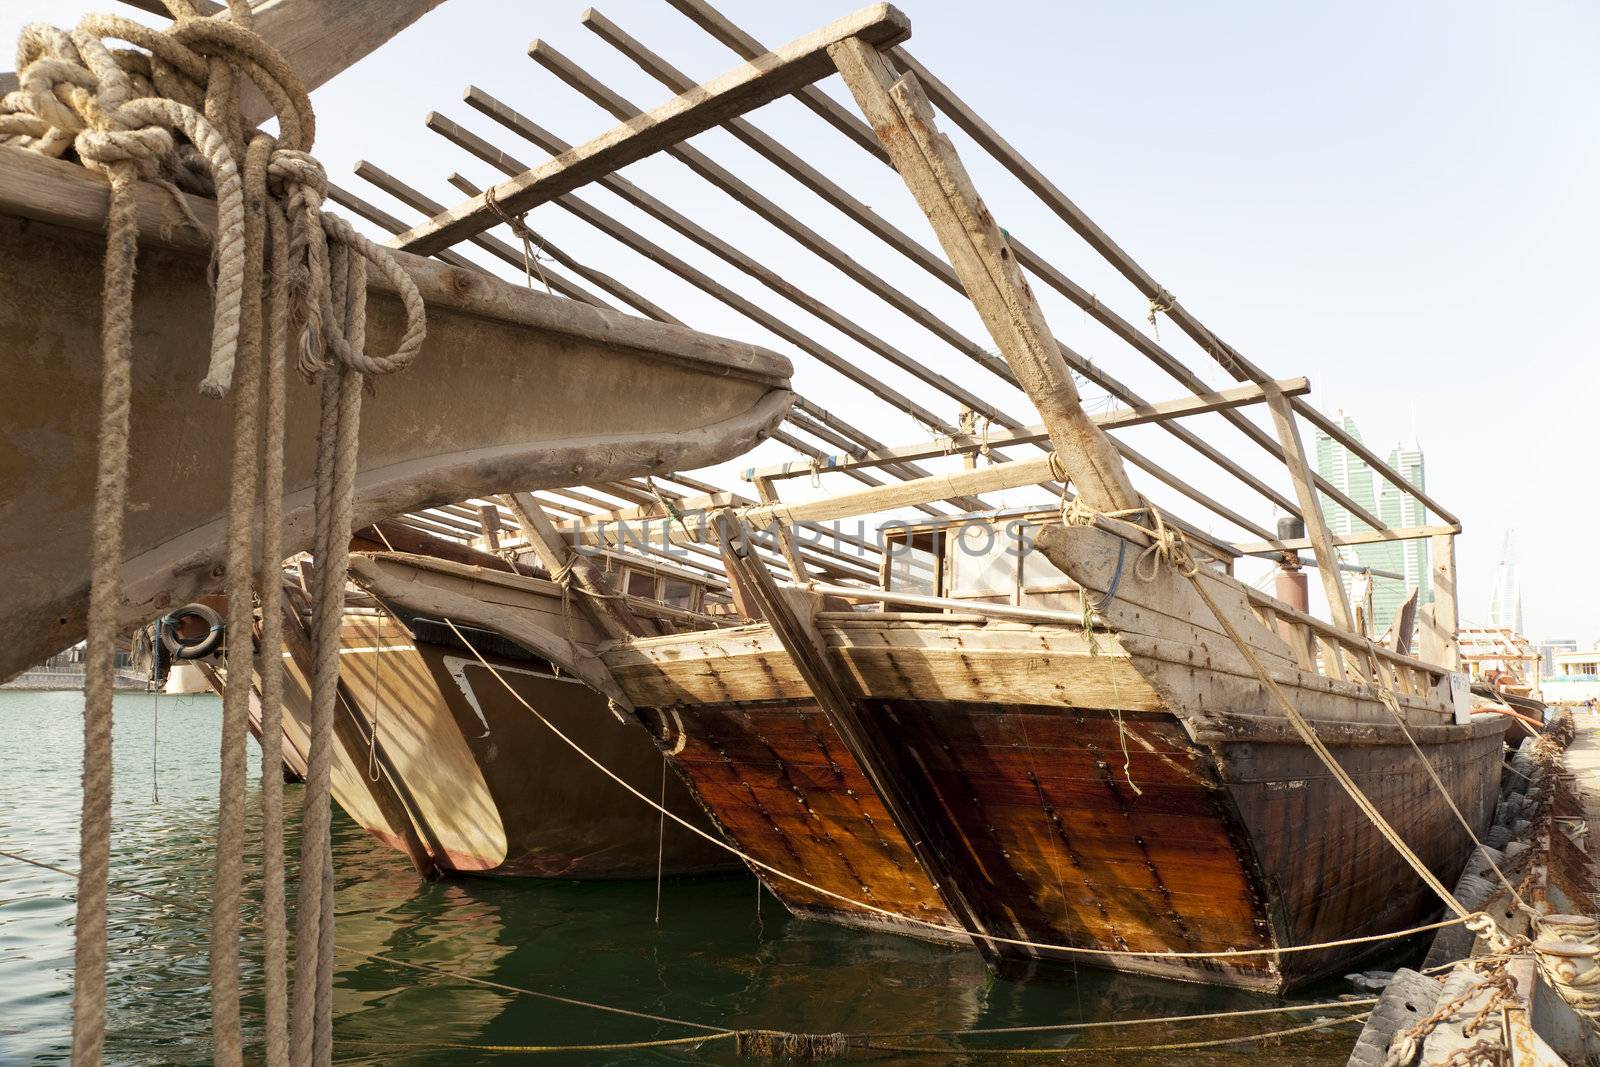 Traditional arab fishing boats at Manama, Bahrain.